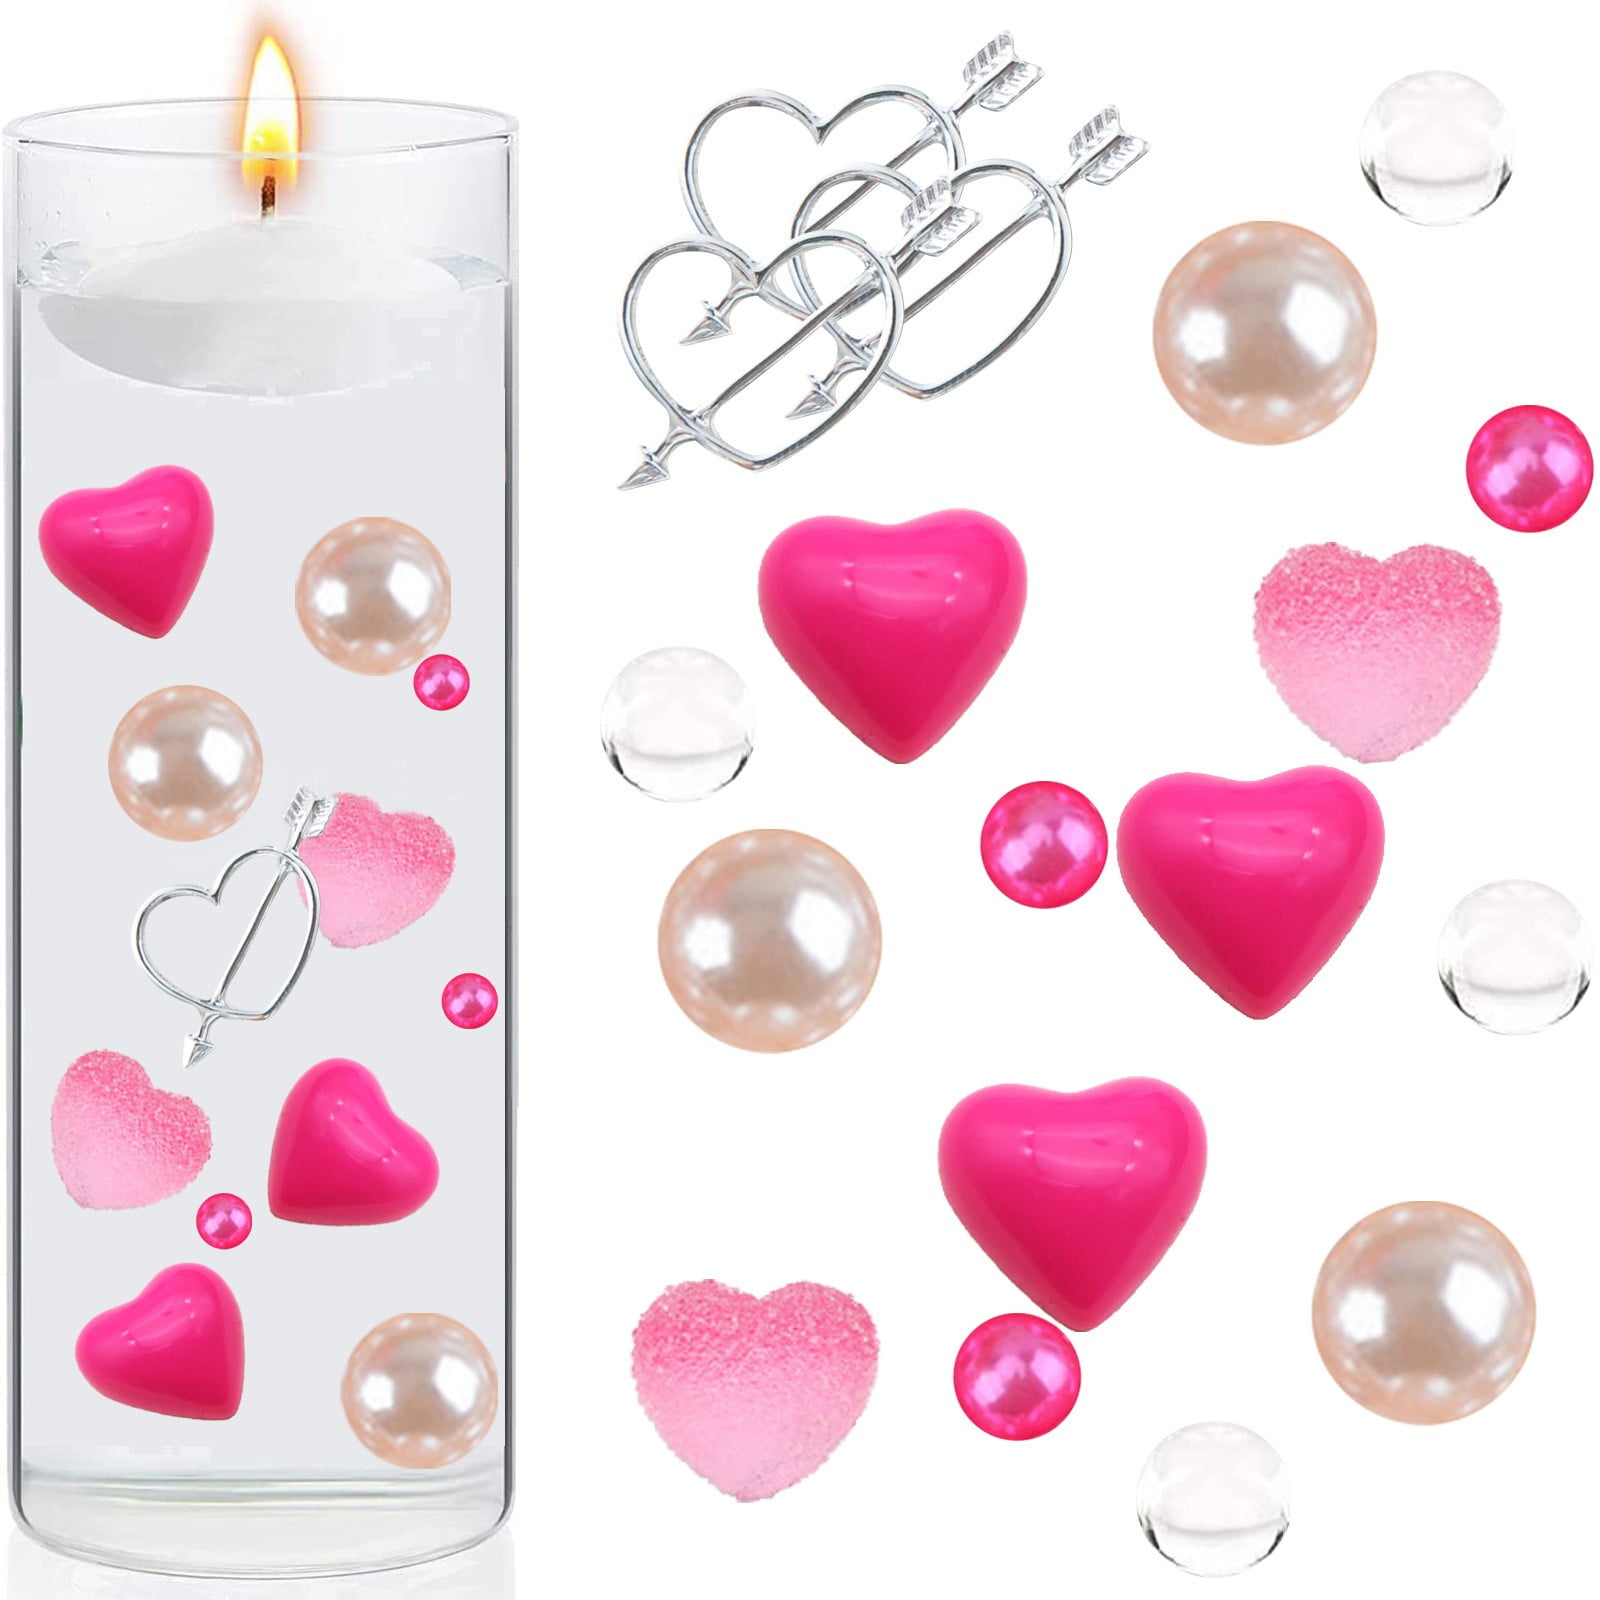 gel candle pink modern  wedding,party,valentine,birthday,centerpiece,homedecor